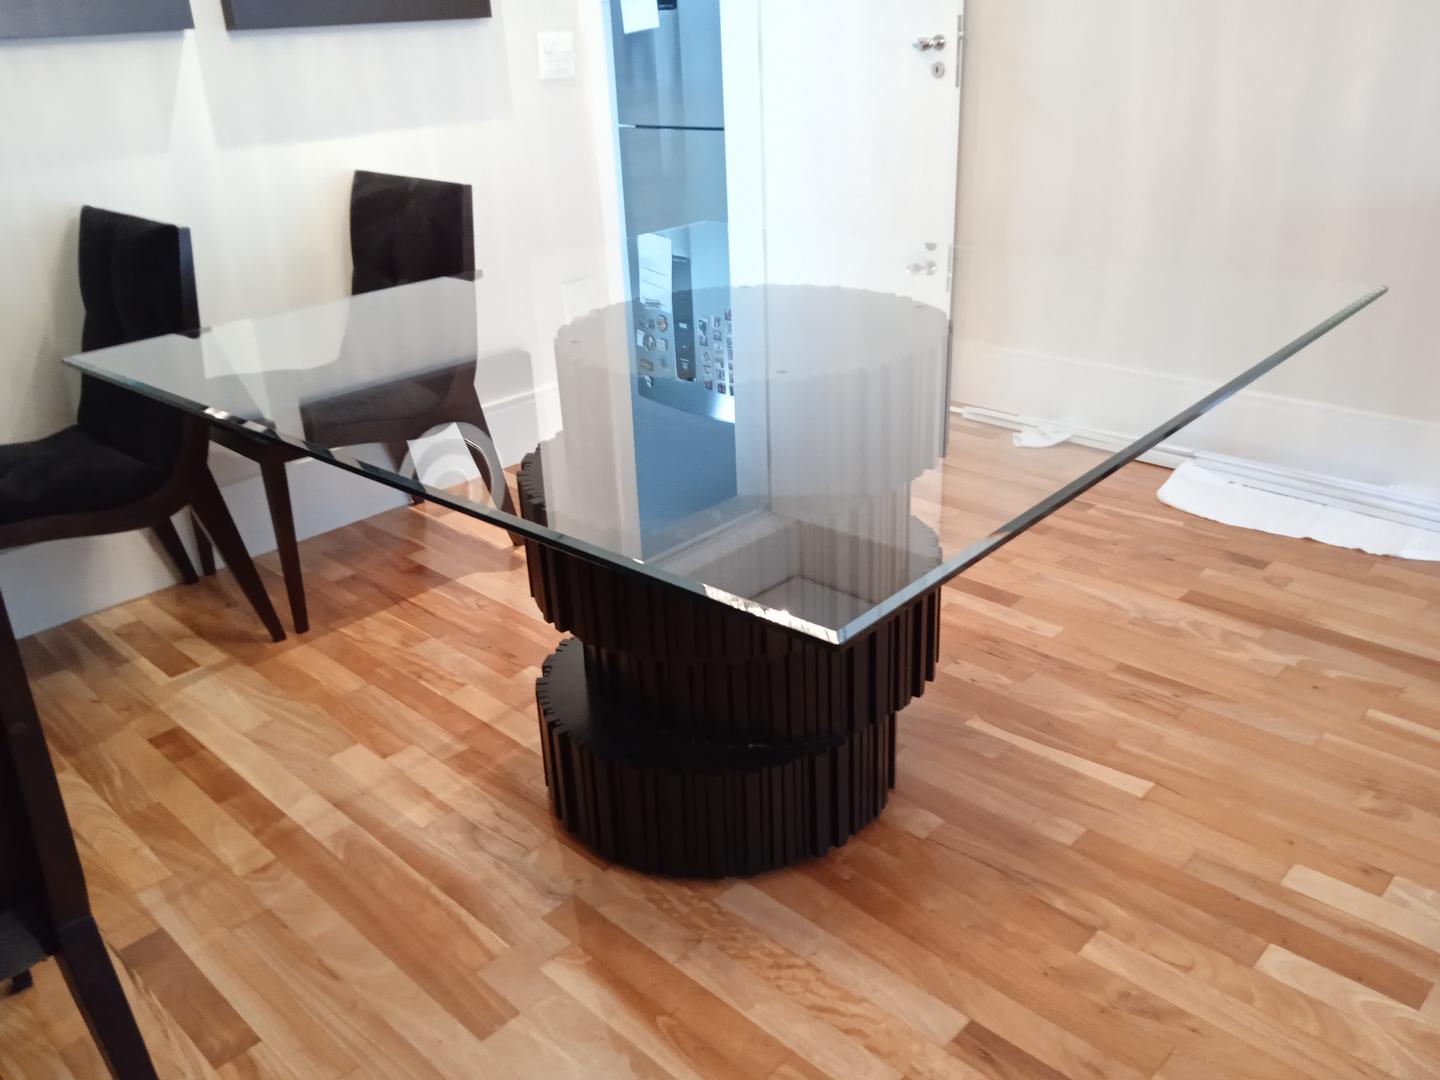 Mesa de jantar em Madeira Marrom 79 cm x 145 cm x 145 cm